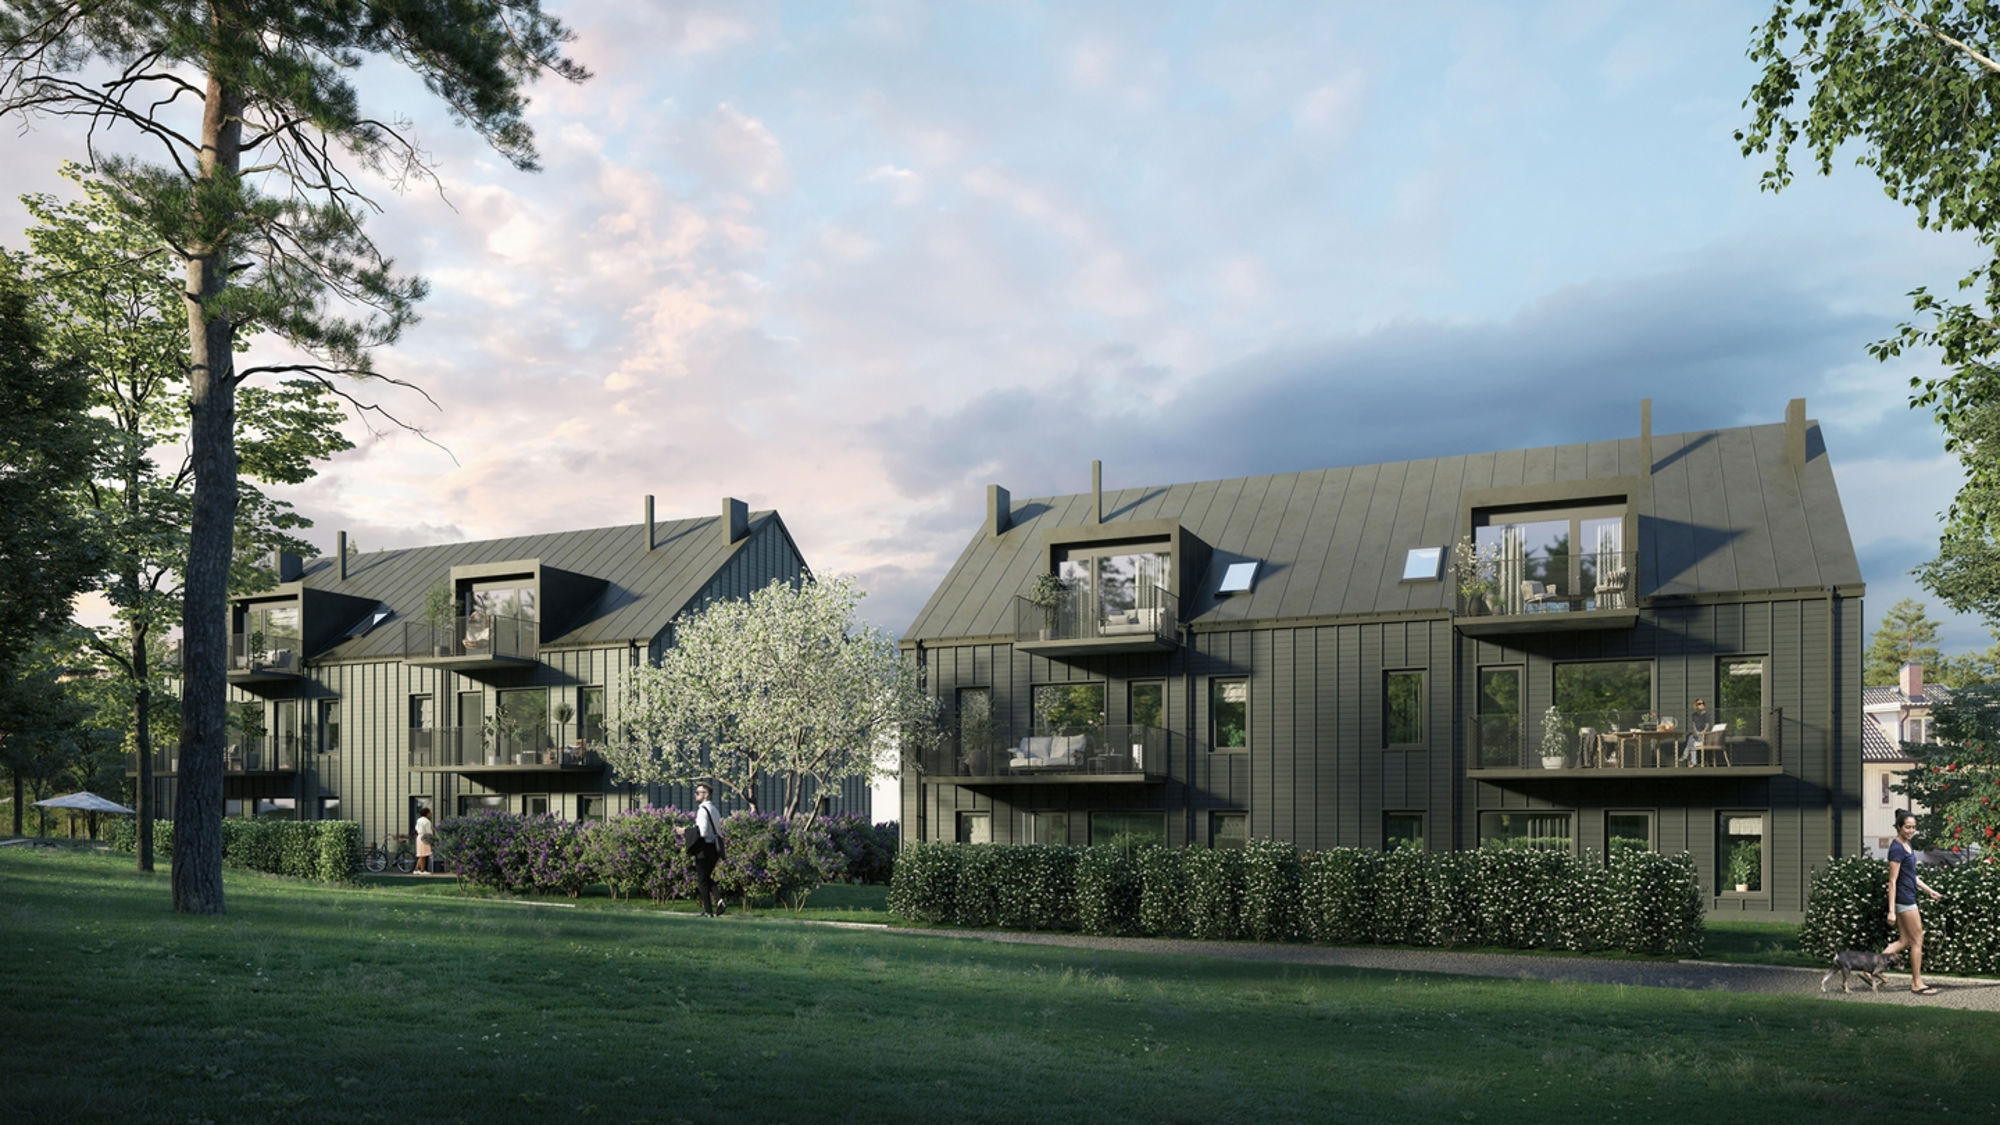 Nya flerbostadshus i trä byggs i Bromma – säljstart för 42 lägenheter